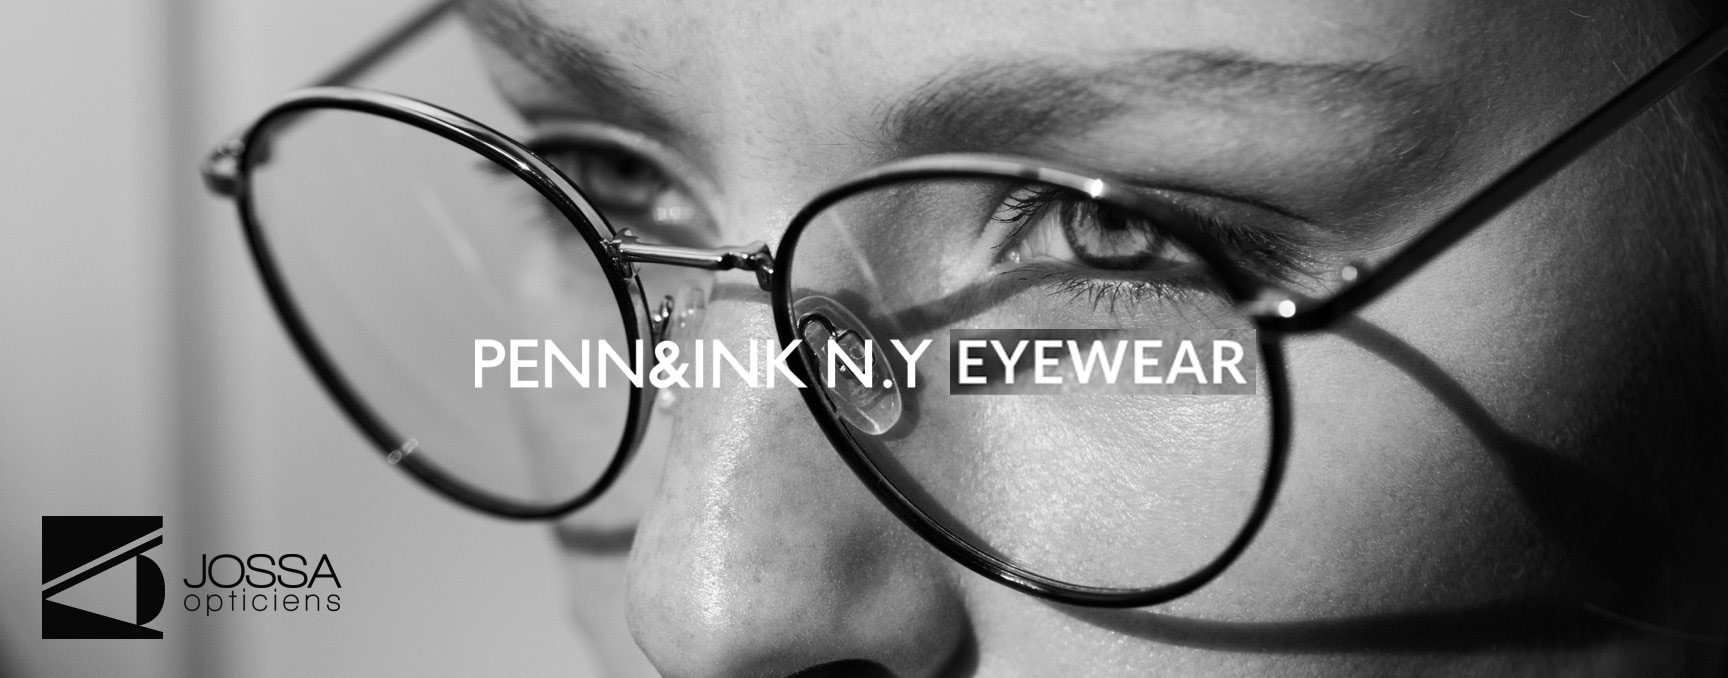 Les opticiens Jossa à Liège ont été séduits par les lunettes de la marque PENN&INK N.Y.